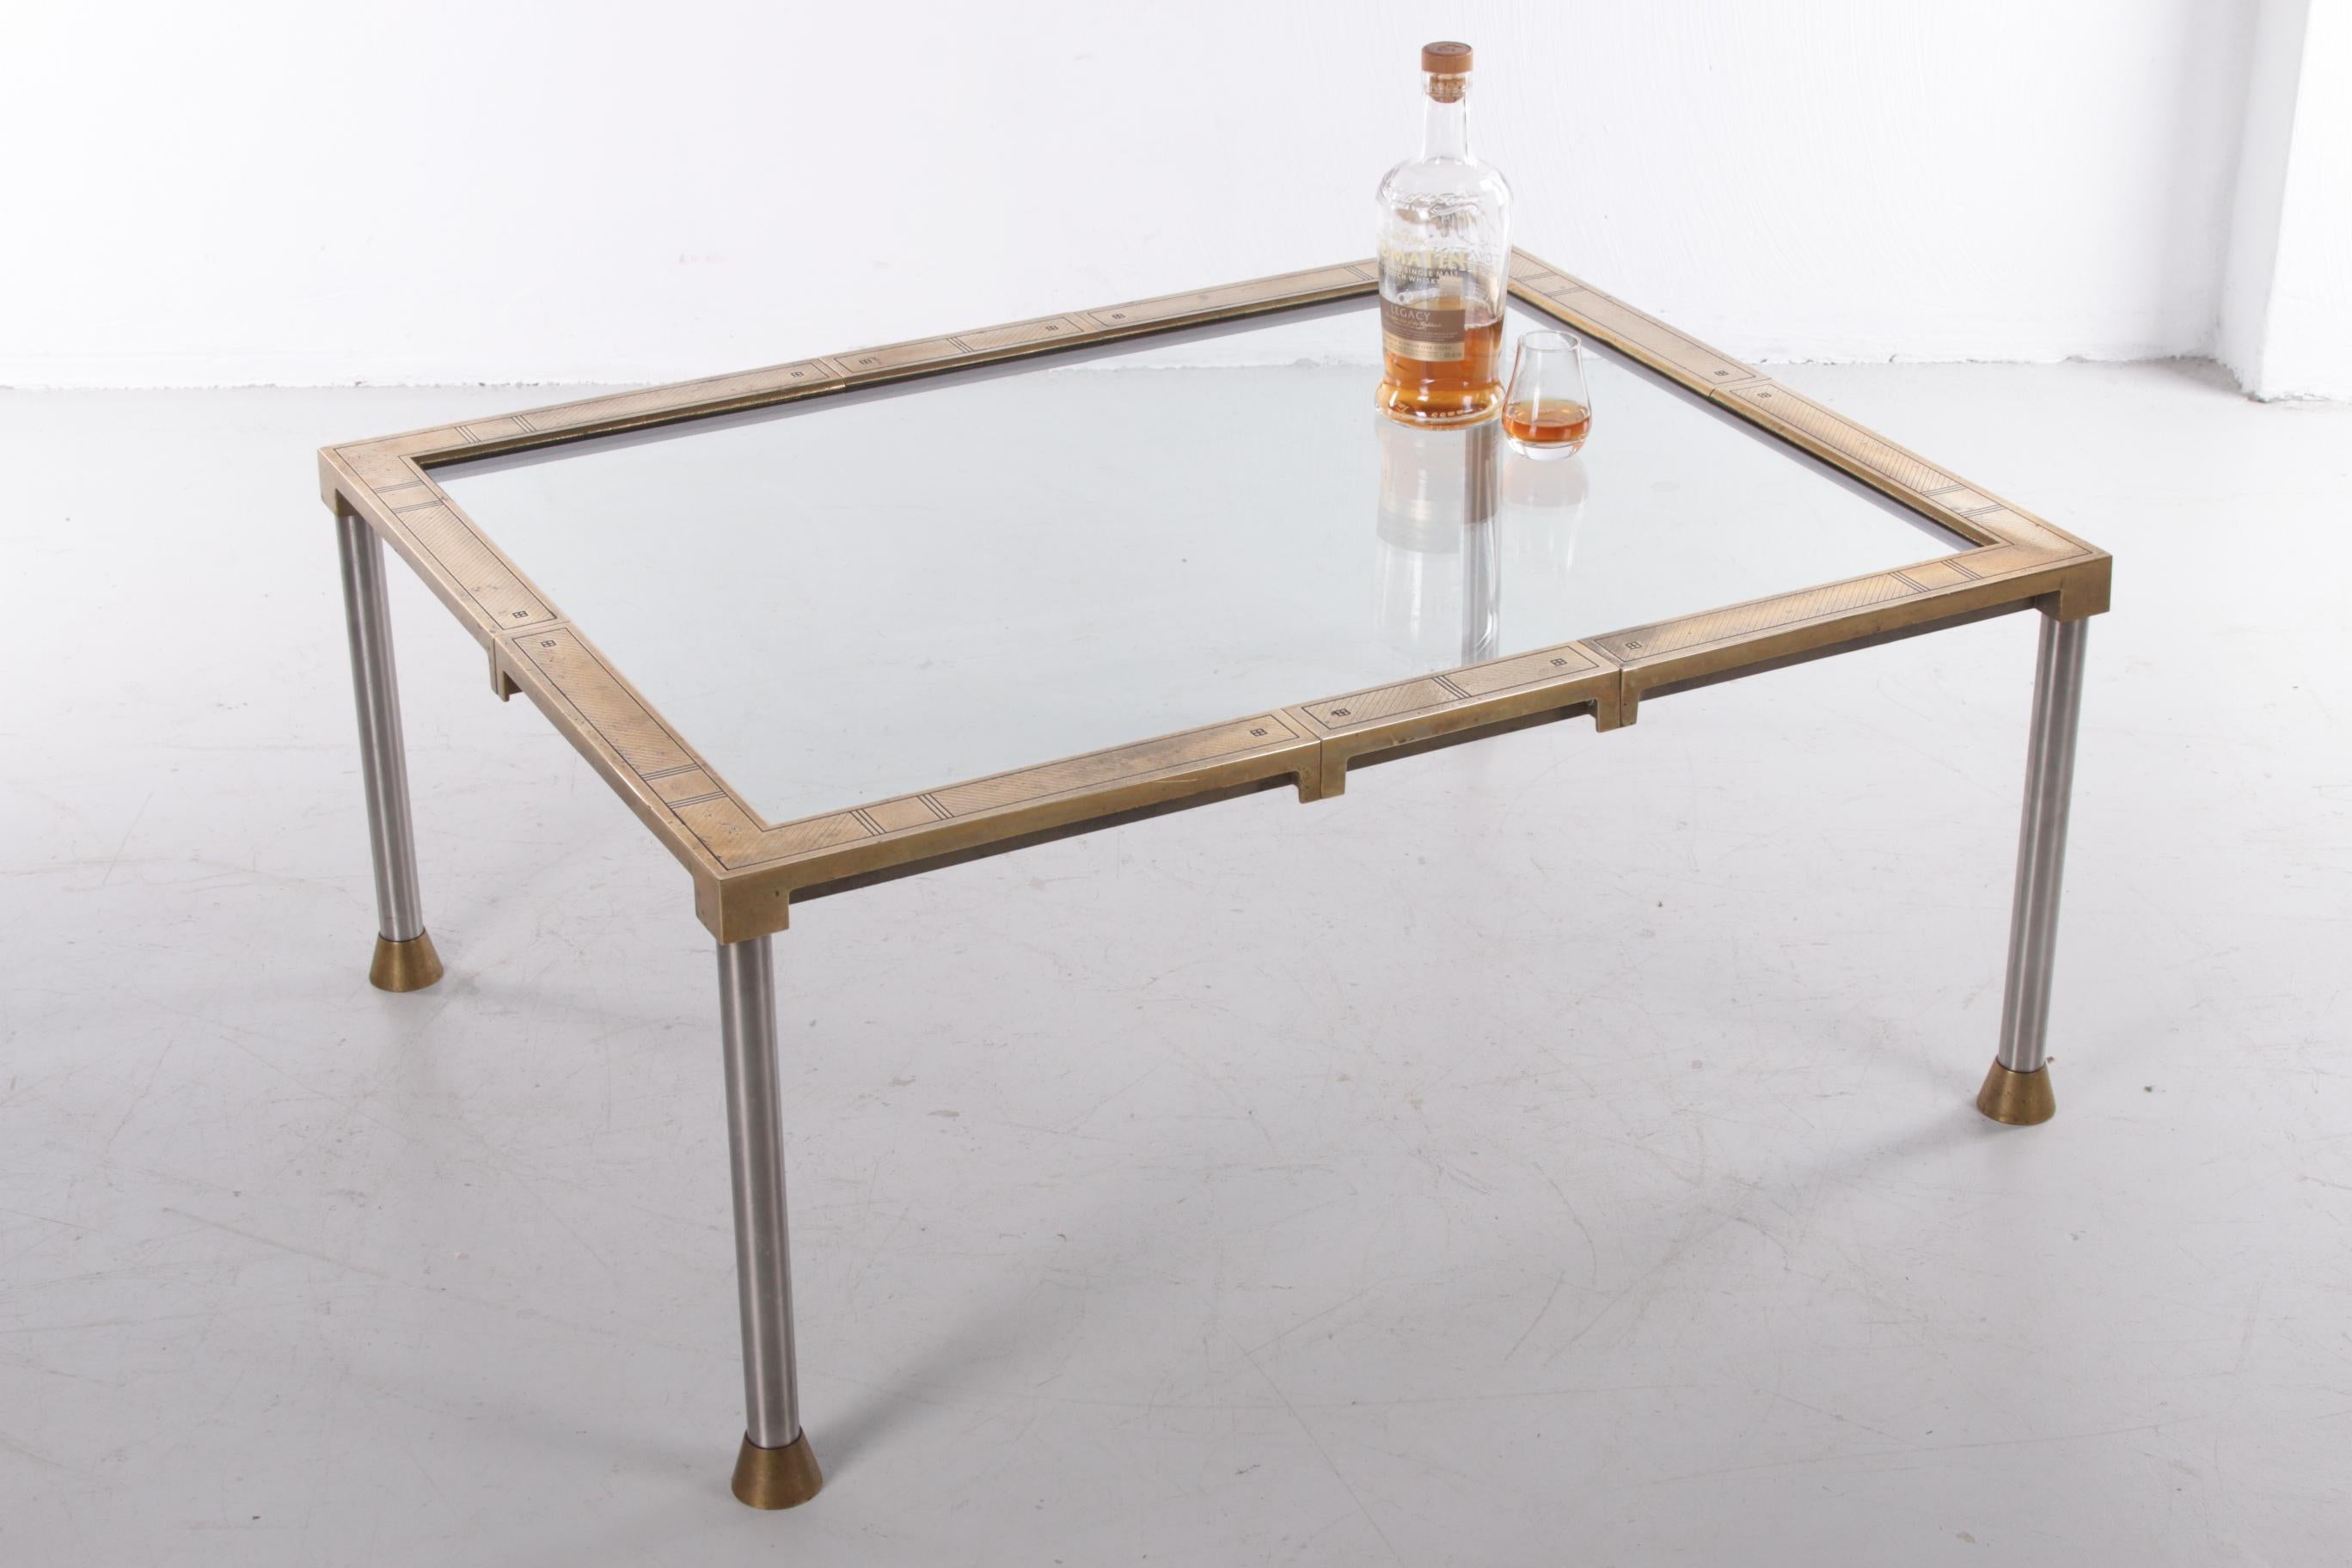 Il s'agit d'un modèle de table basse très rare. Nous avons contacté Peters Ghyczy, qui nous a indiqué que cette table avait été éditée une fois en 1990 pour une grande foire, l'IMM à Cologne au début des années 1990.

À l'époque, 10 tables ont été